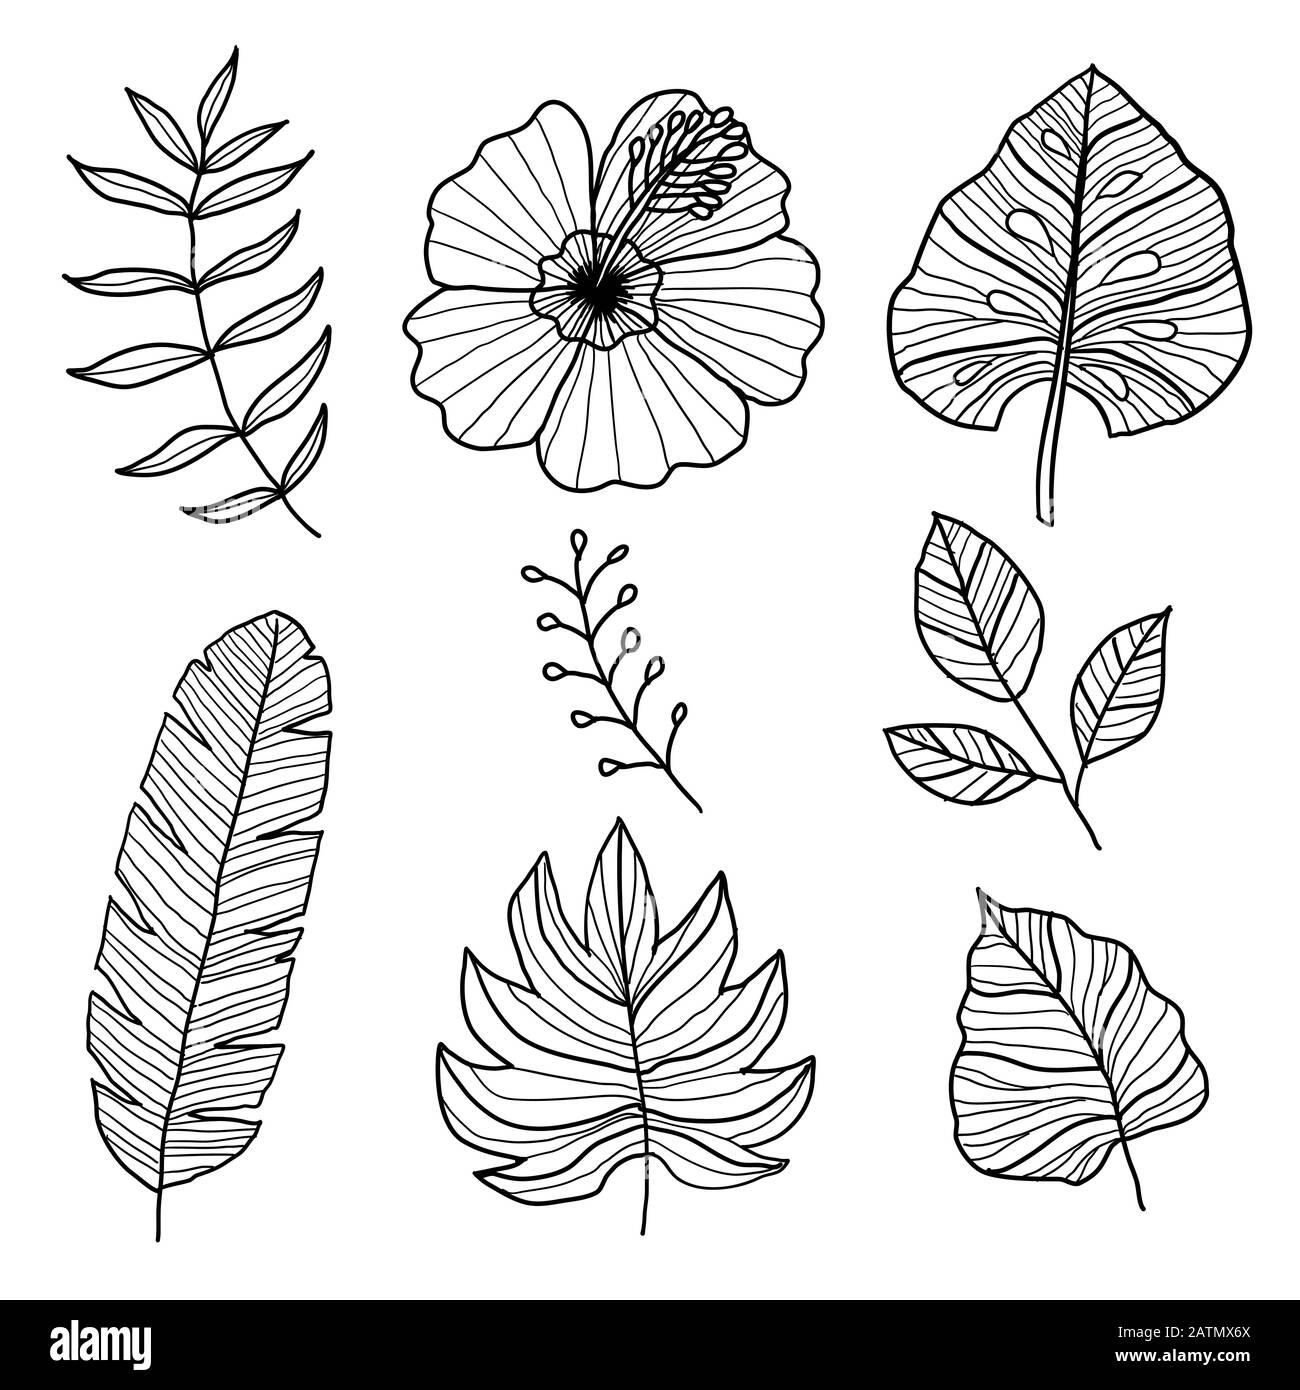 Ensemble d'éléments vectoriels botaniques, de feuilles tropicales et de fleurs sur fond blanc. Style dessiné à la main - Ilustration vectorielle Illustration de Vecteur